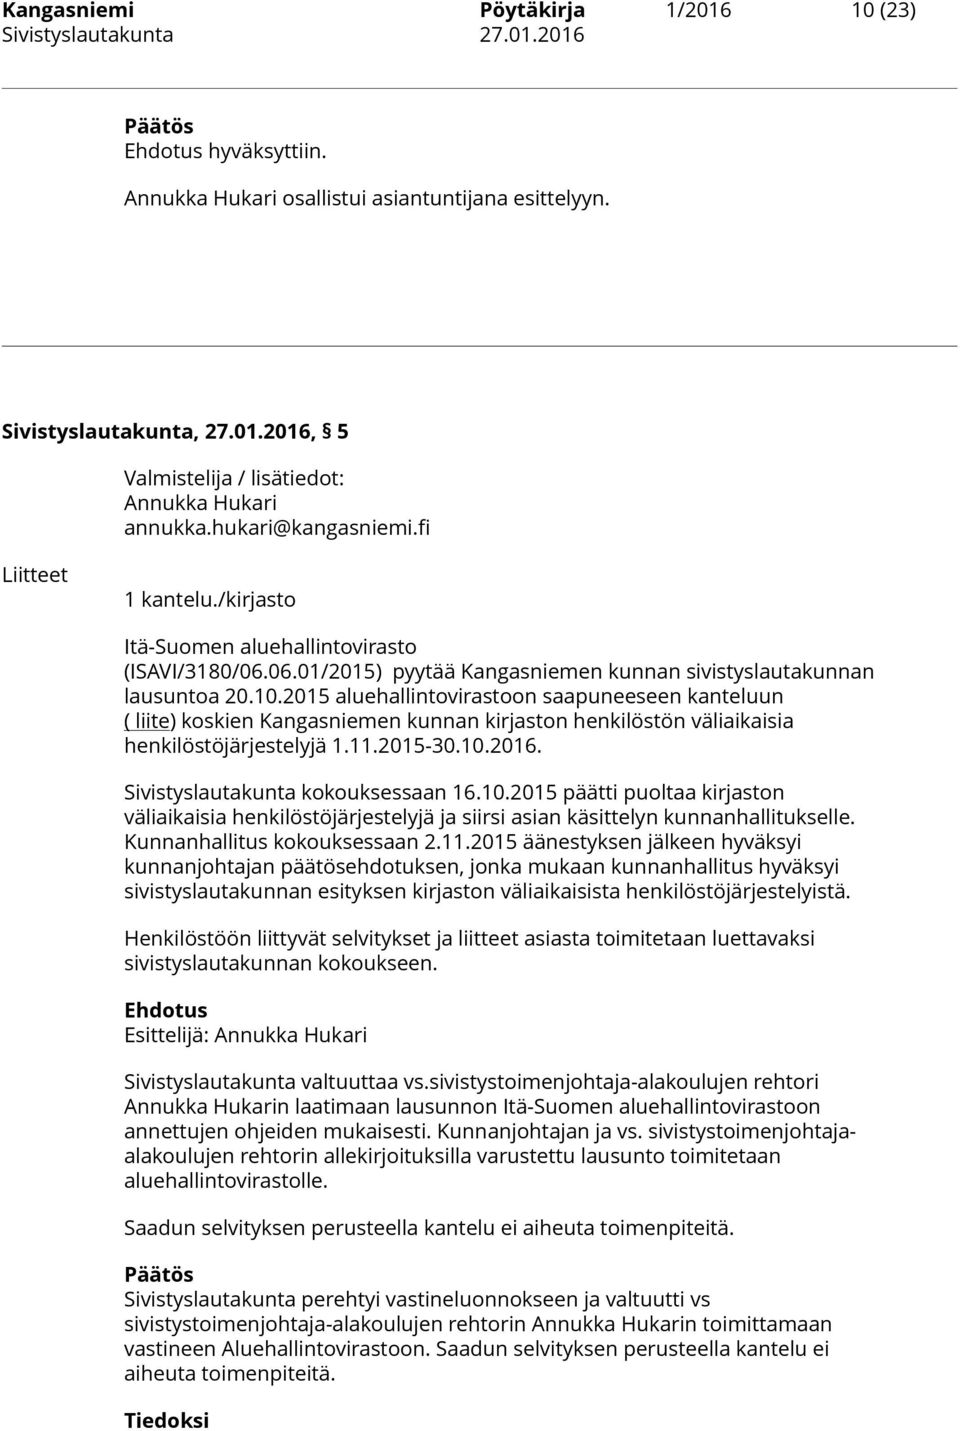 2015 aluehallintovirastoon saapuneeseen kanteluun ( liite) koskien Kangasniemen kunnan kirjaston henkilöstön väliaikaisia henkilöstöjärjestelyjä 1.11.2015-30.10.2016.